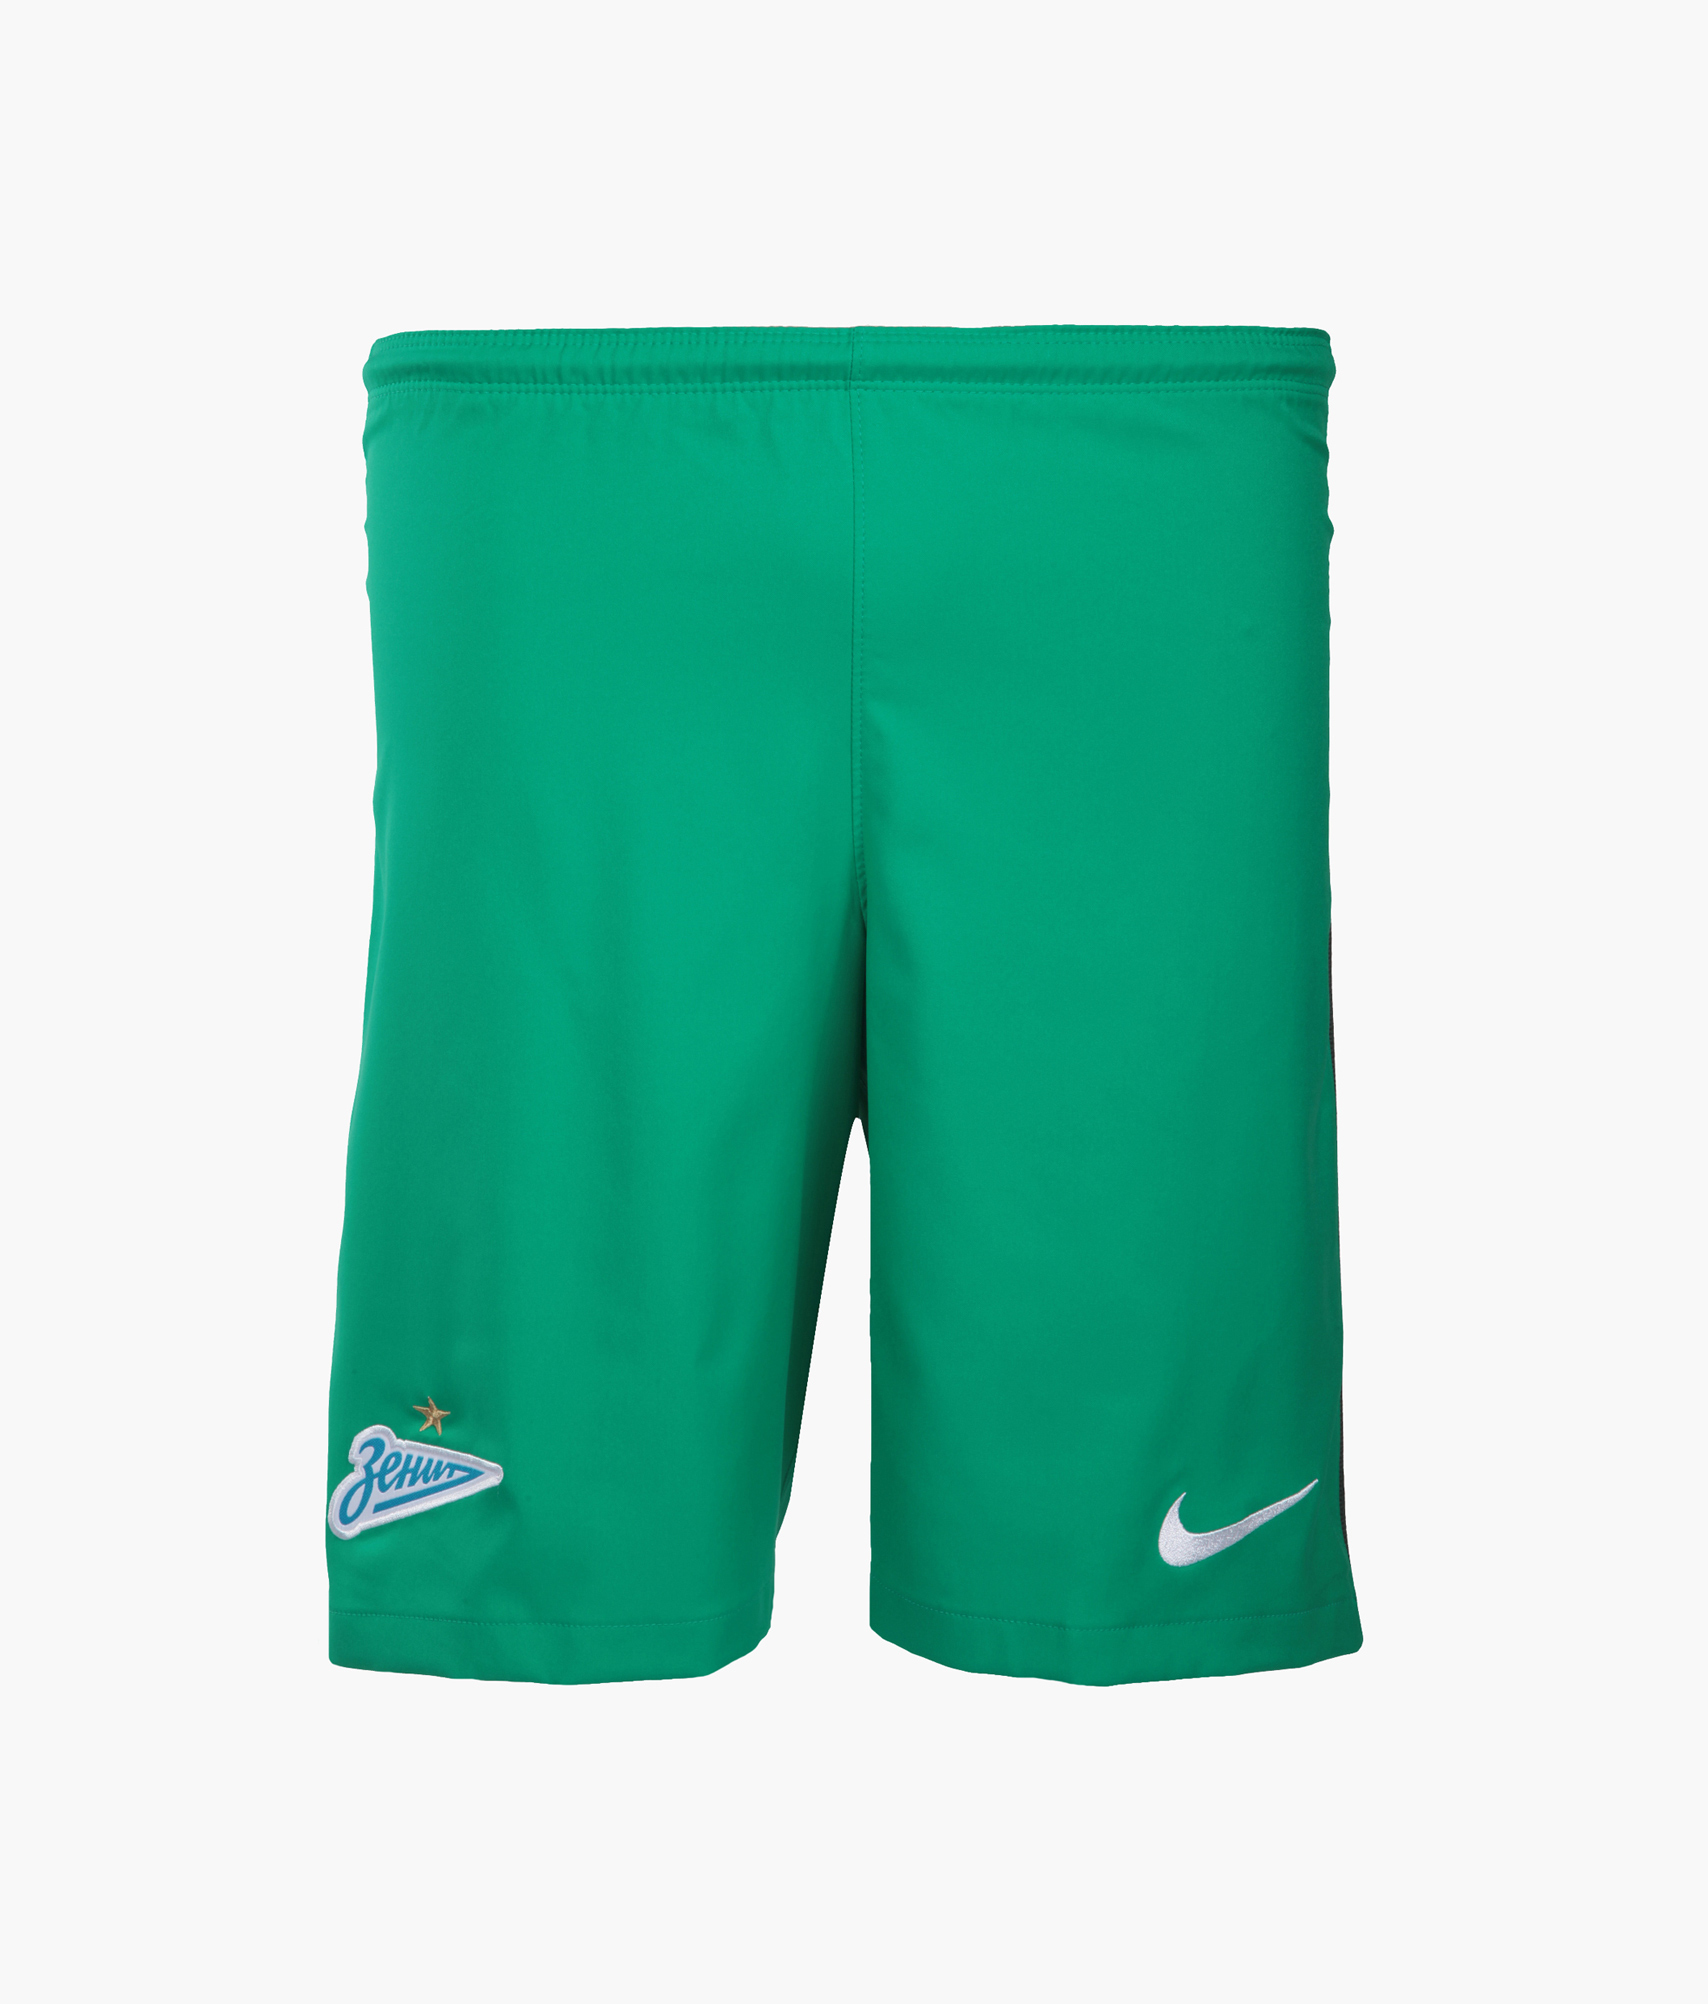 Оригинальные вратарские шорты Nike Nike Цвет-Зеленый